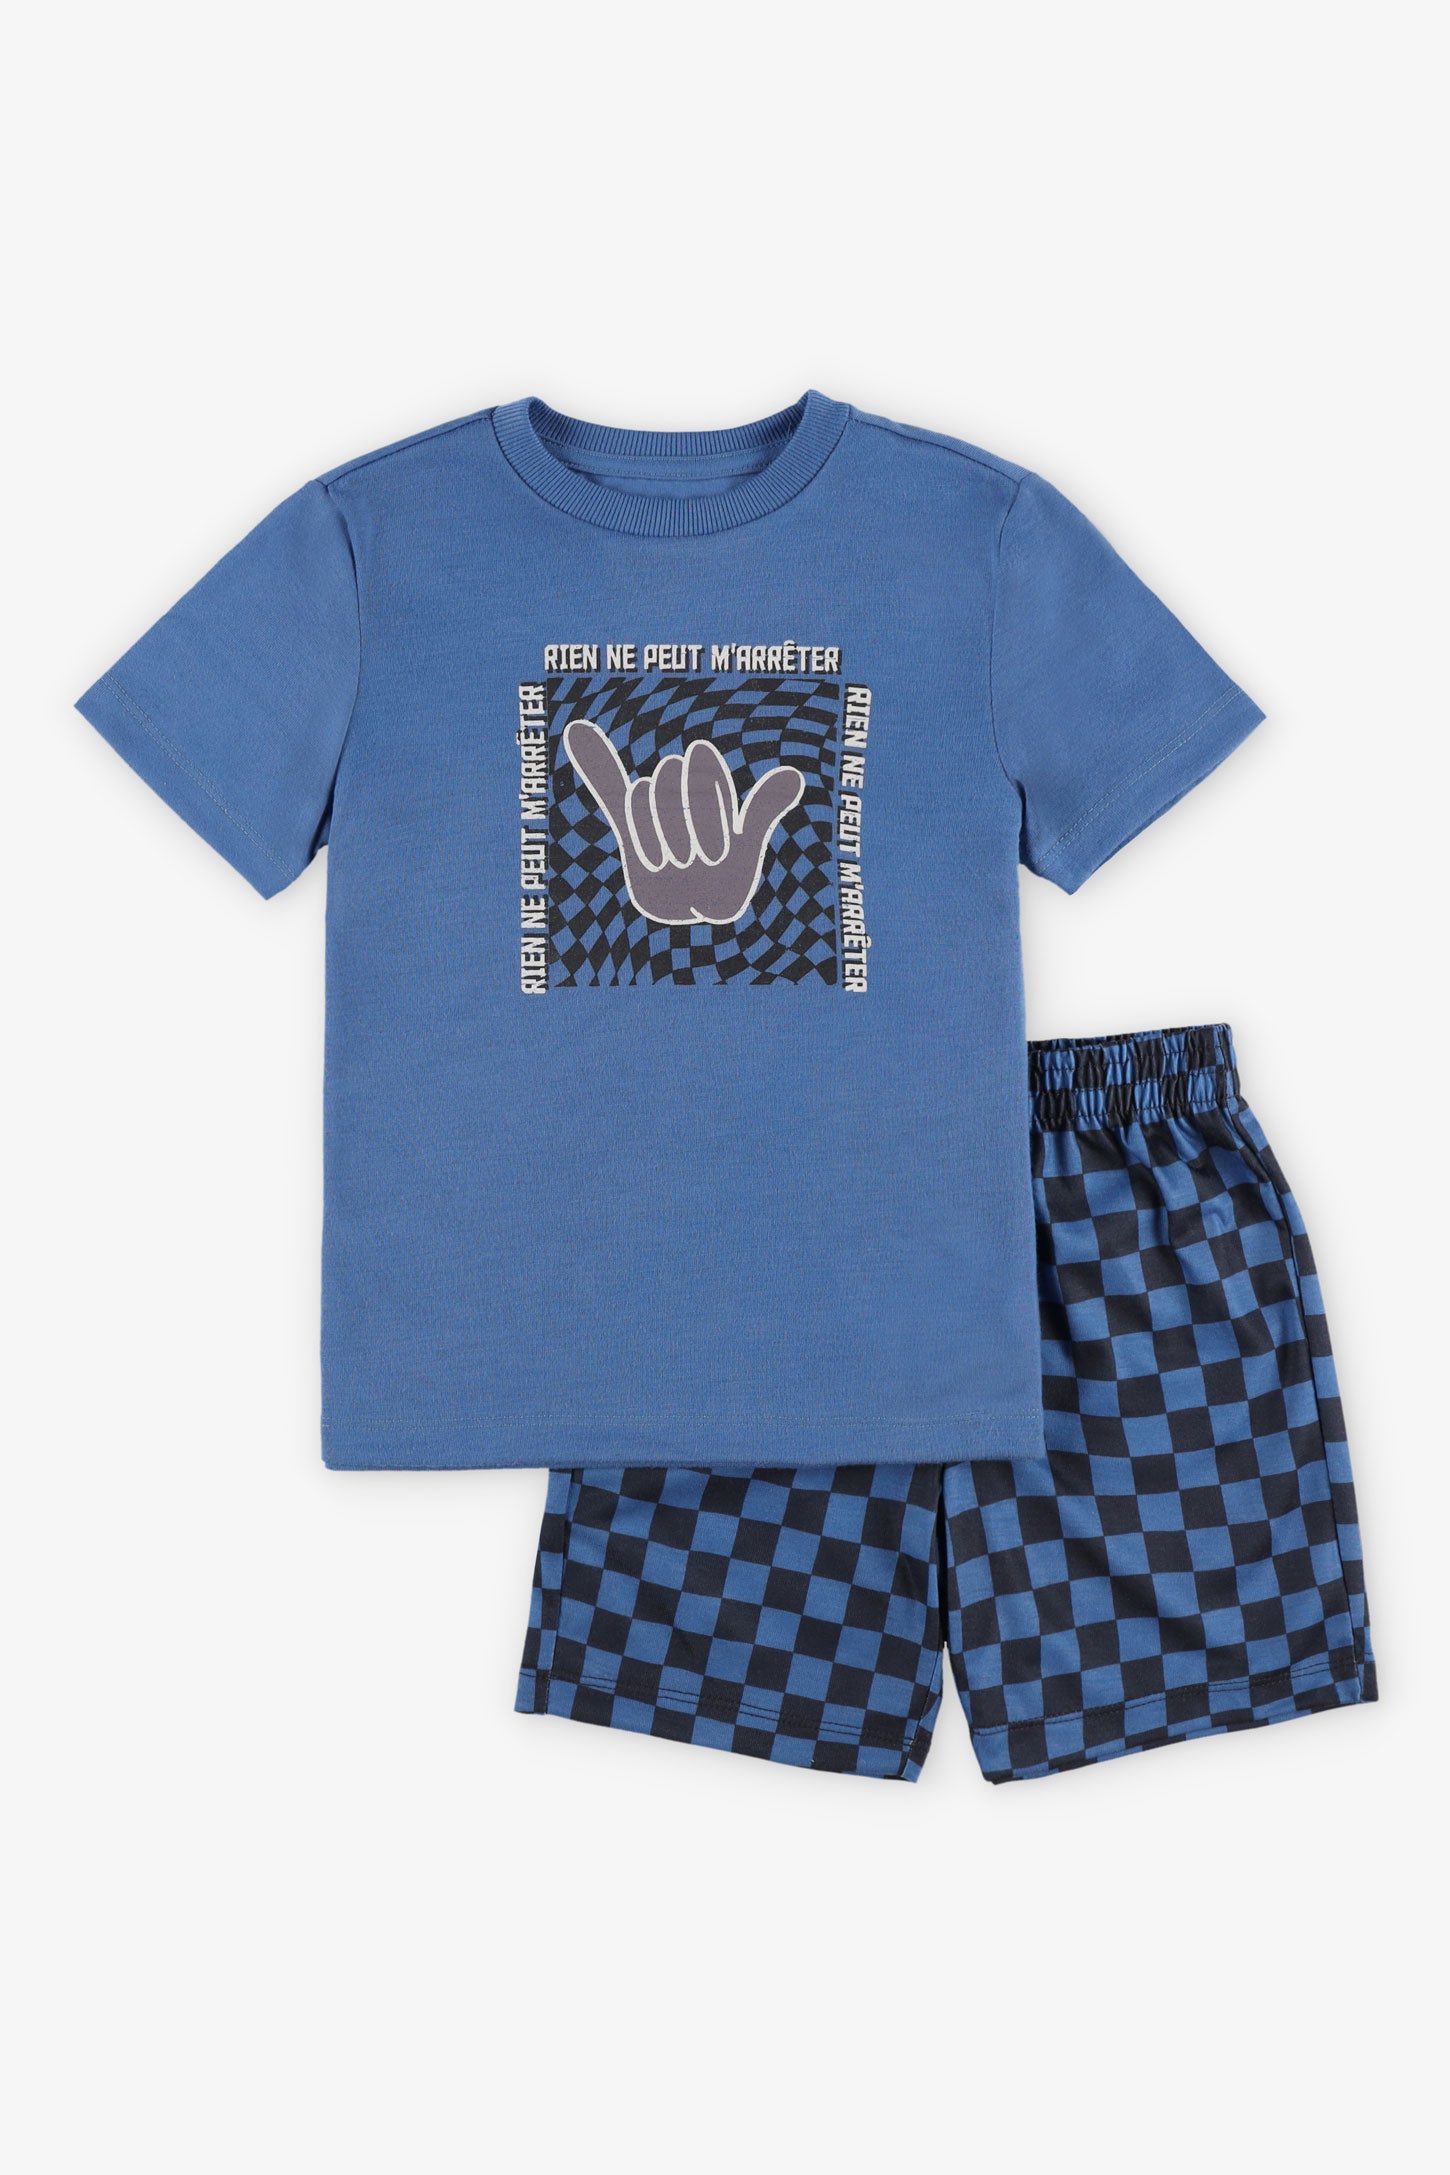 Pyjama 2-pièces, 2/35$ - Enfant garçon && BLEU